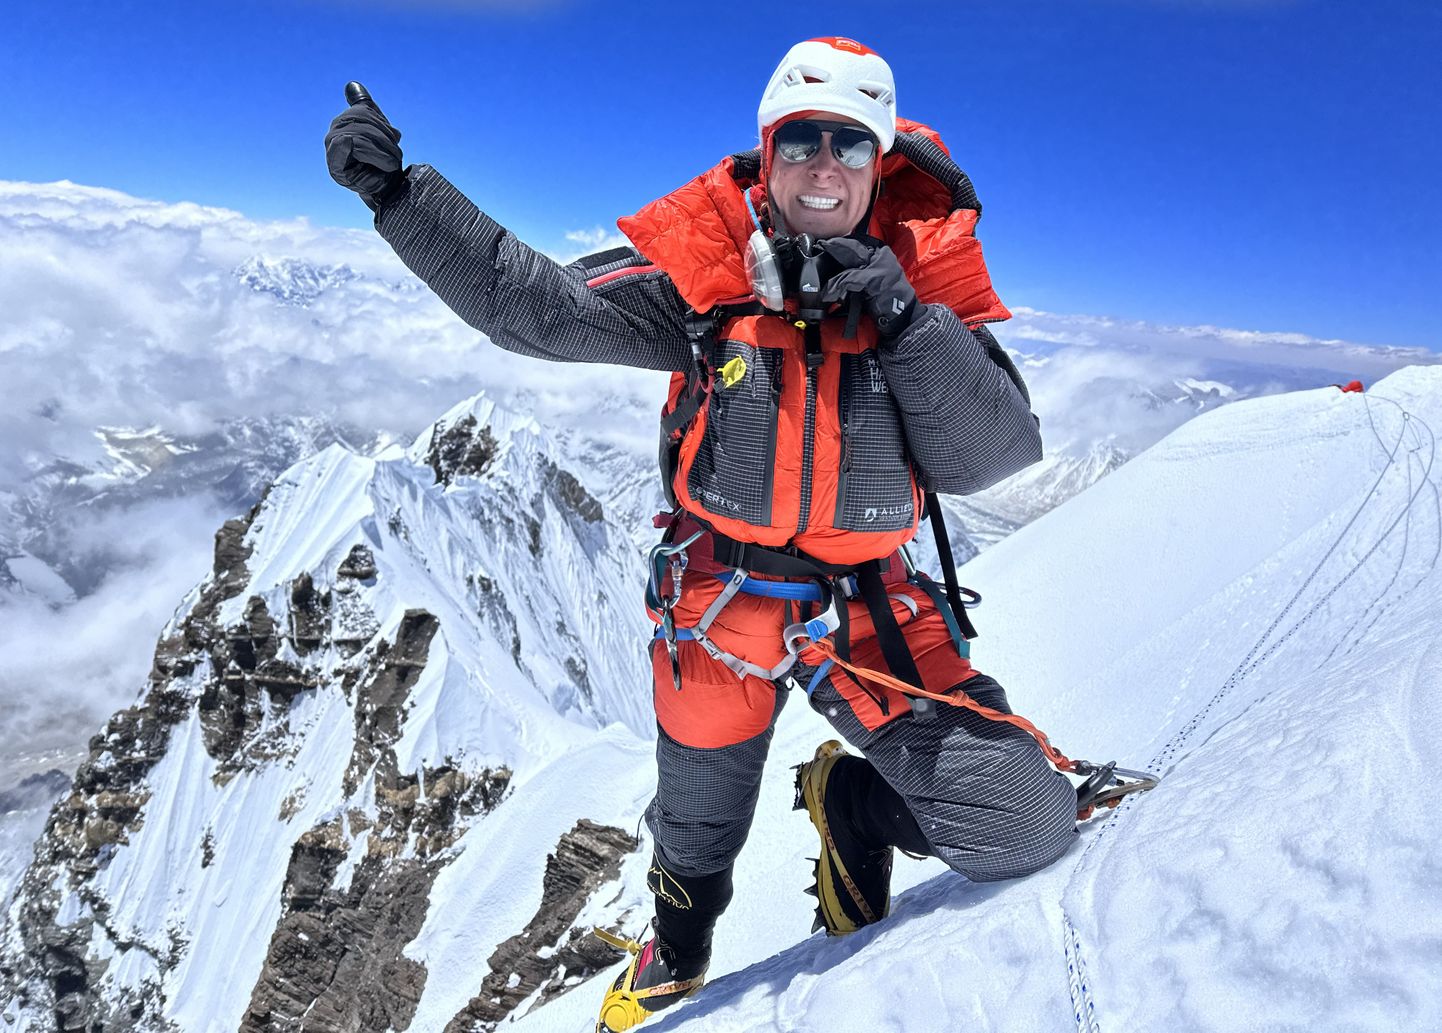 Krisli Meleski 2023. aasta maikuise ekspeditsiooni soojendusmägi oli Nuptse (7861 meetrit), millele tõustakse samuti Džomolungma baaslaagrist ja kuhu on siiani jõudnud vaid 25 alpinisti